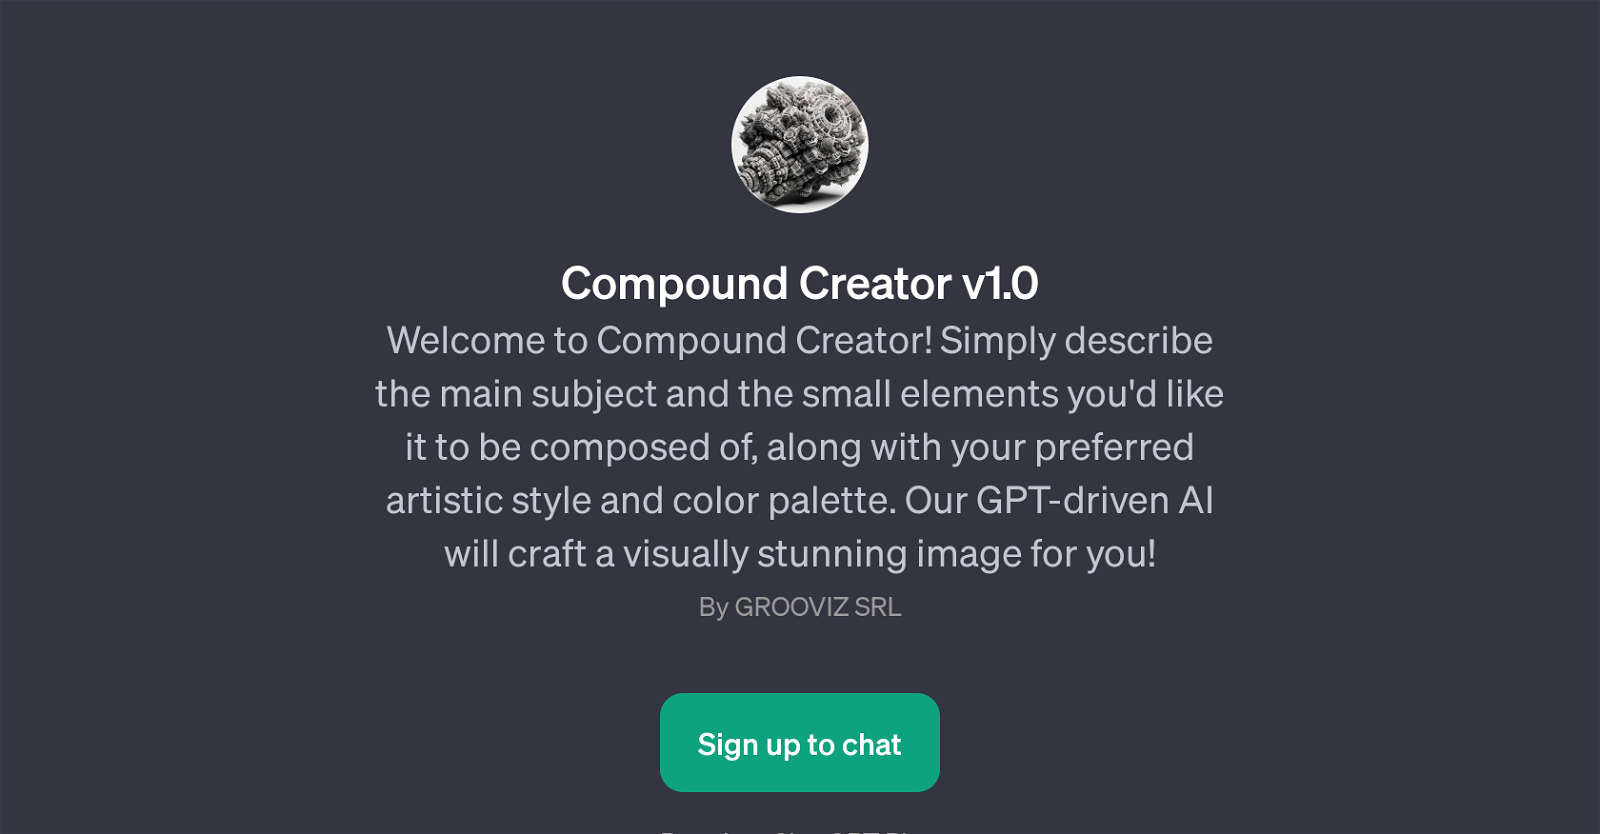 Compound Creator v1.0 website